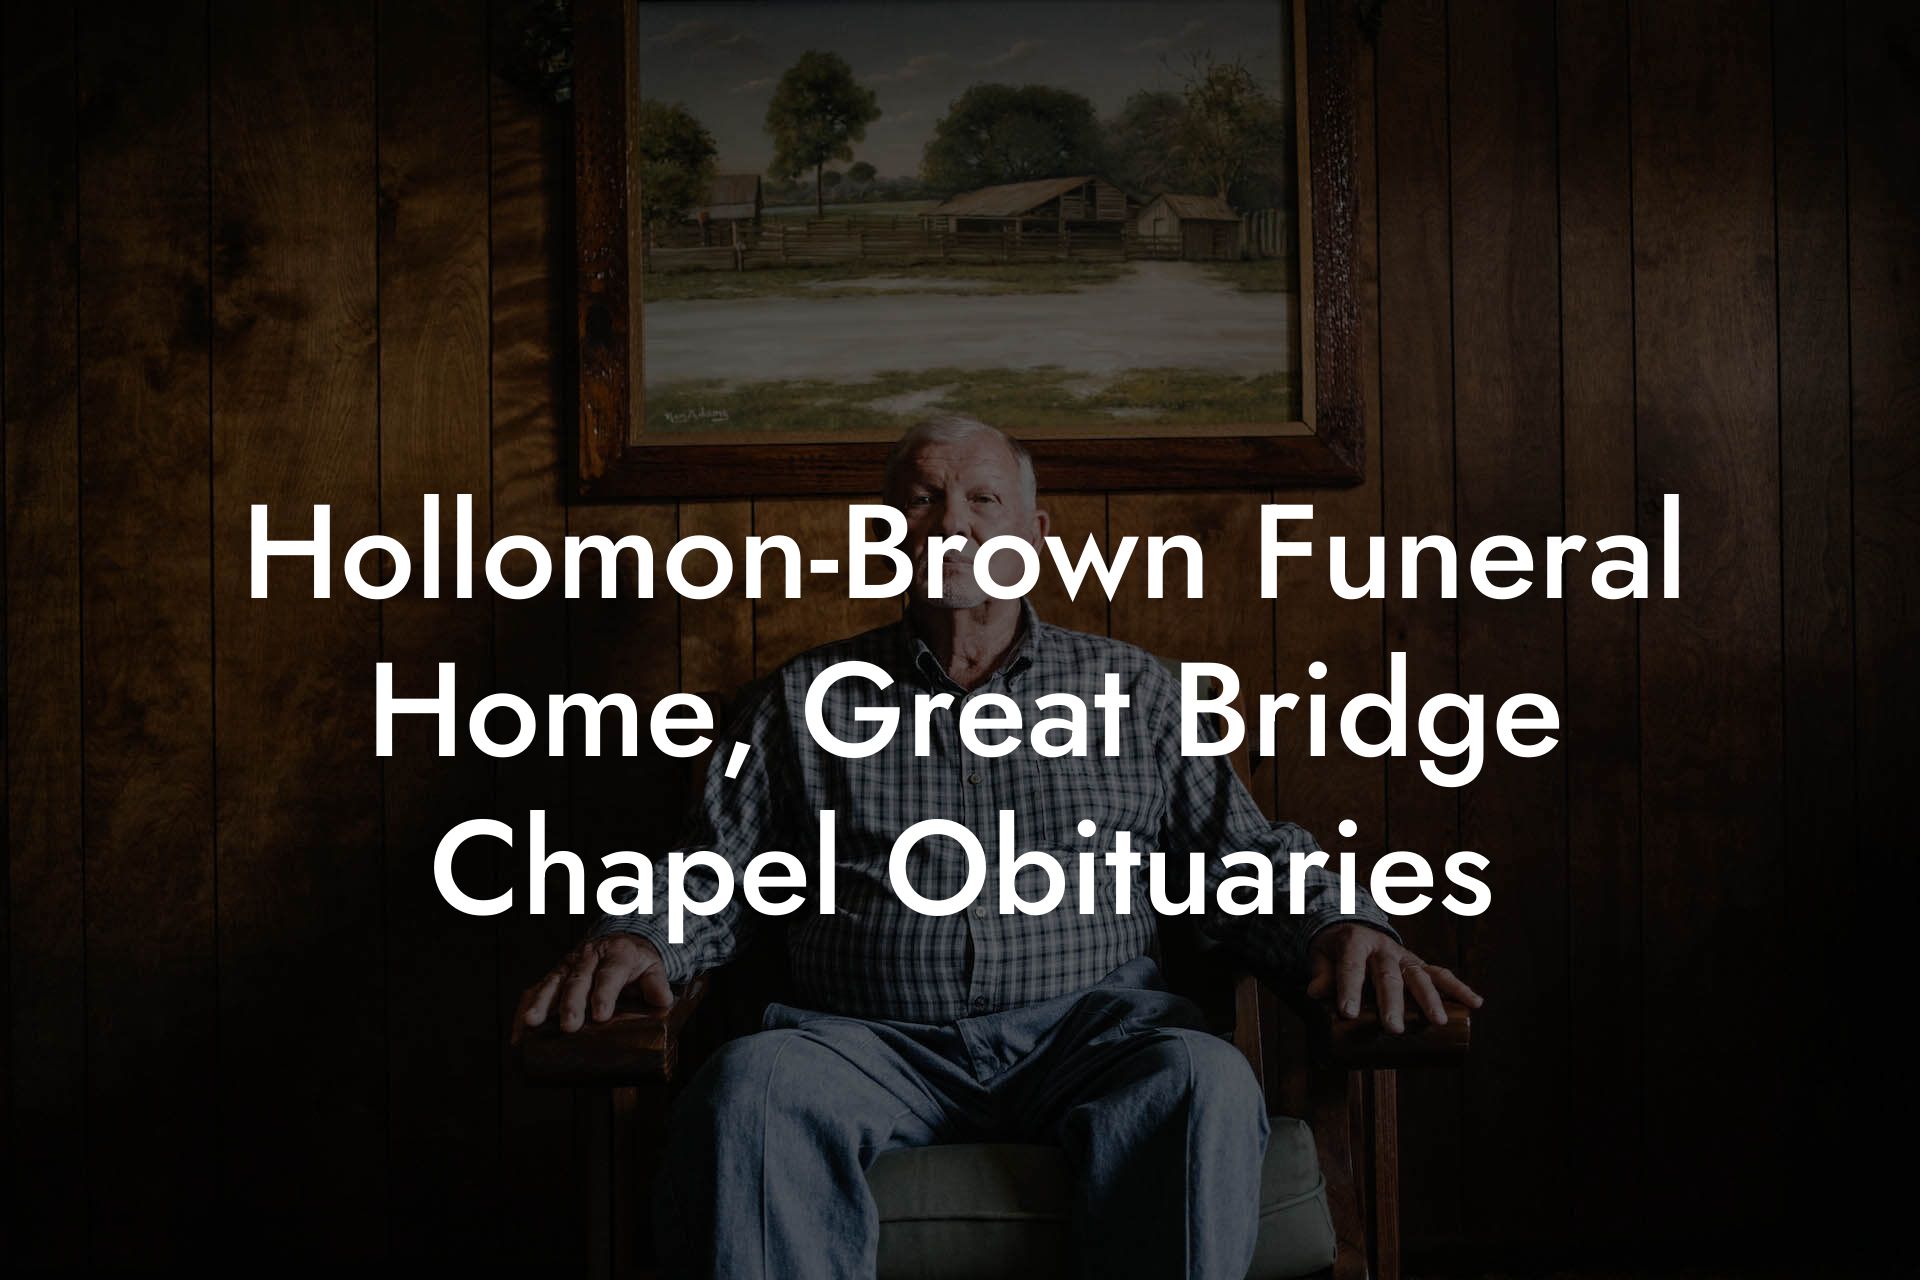 Hollomon-Brown Funeral Home, Great Bridge Chapel Obituaries